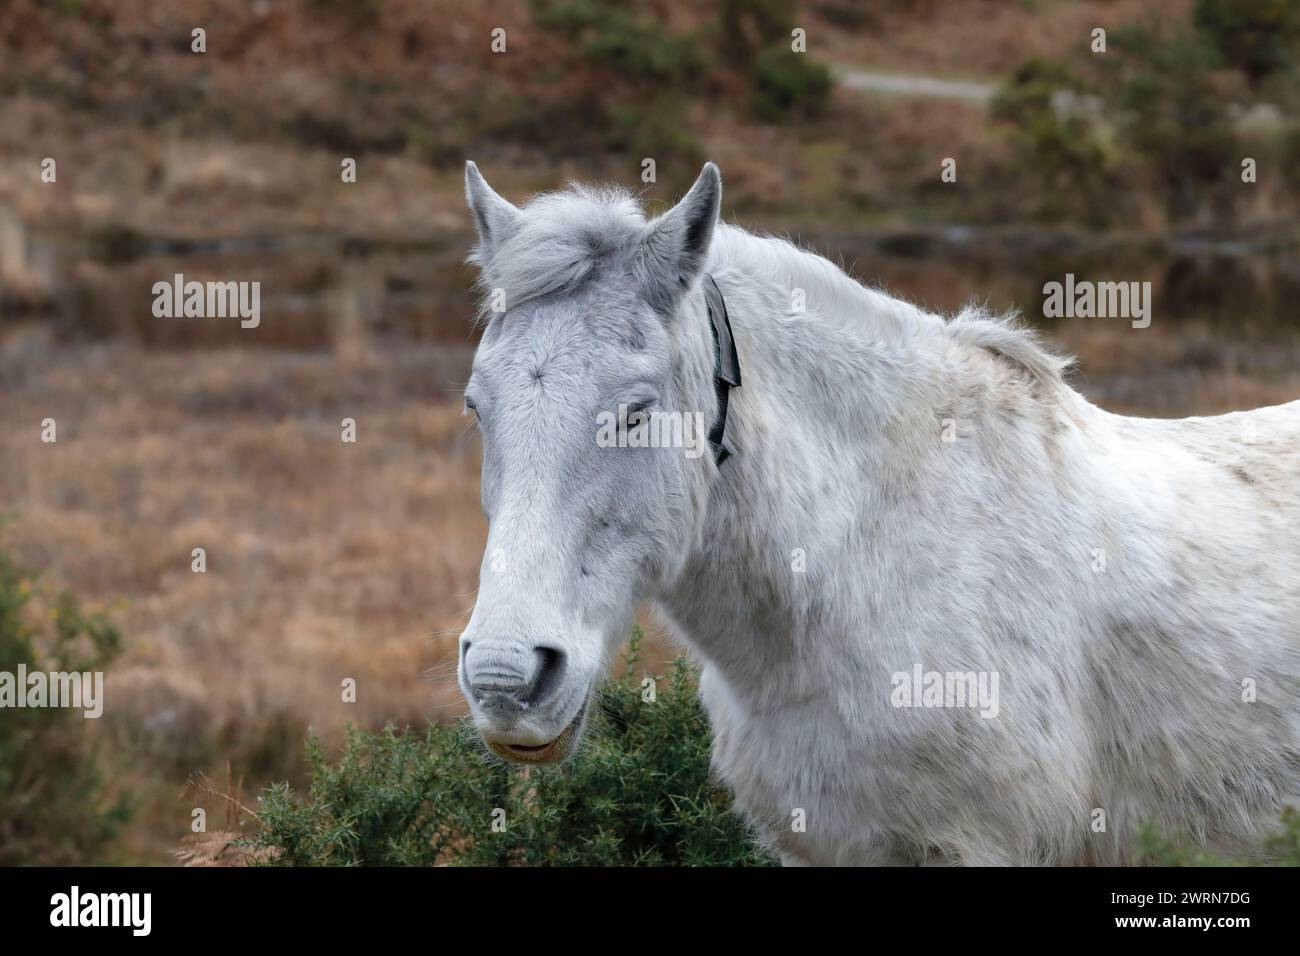 Photo de tête d'un poney New Forest blanc sur la lande, face à la gauche, avec gorse et bruyère en arrière-plan. Banque D'Images